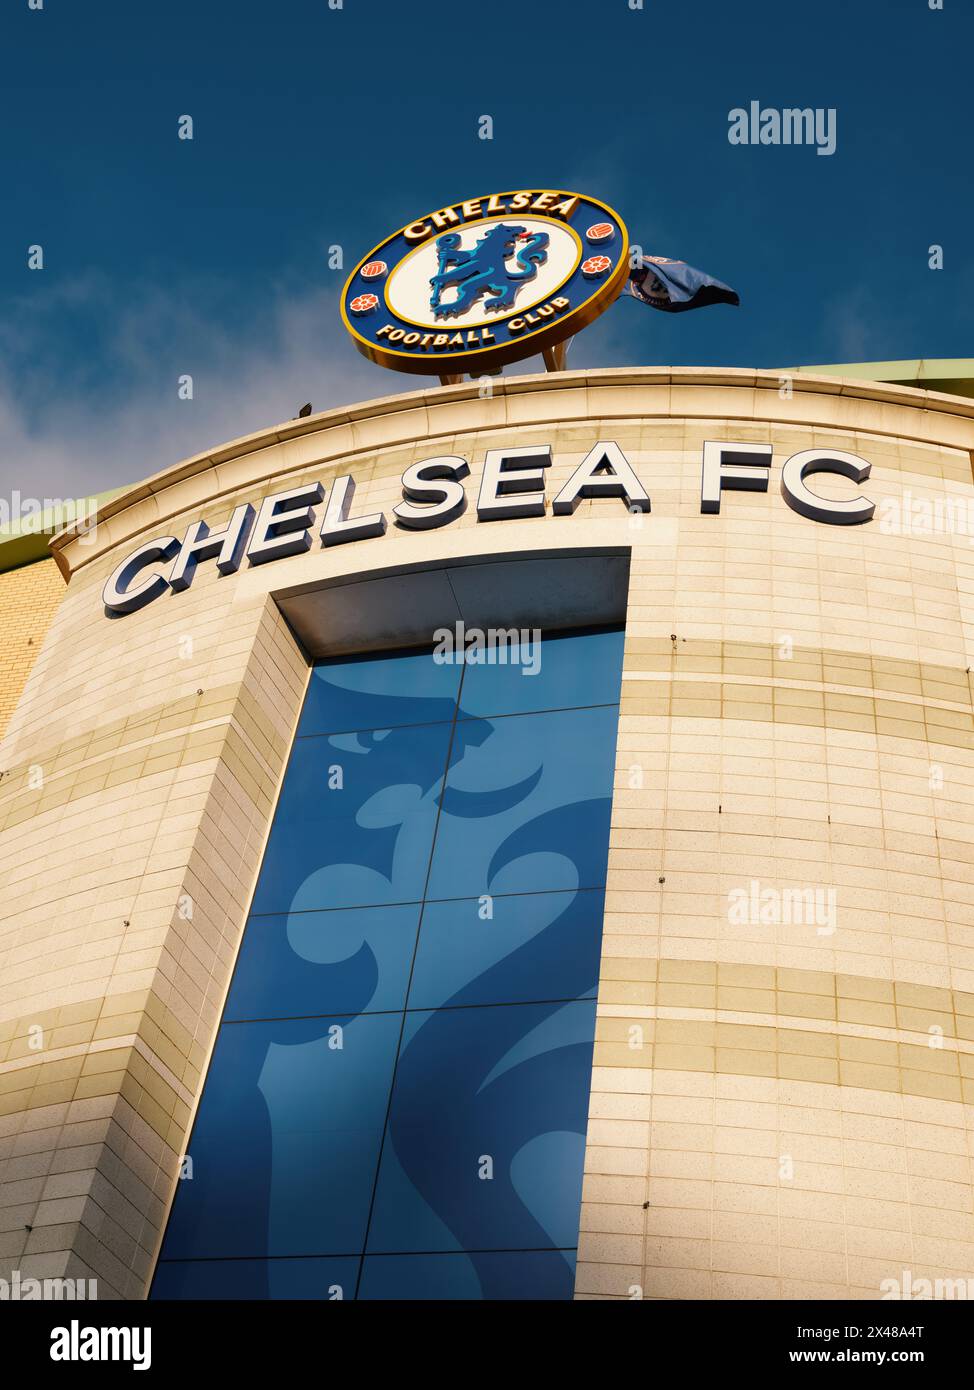 Stamford Bridge, Stadion des Chelsea Football Club und Abzeichen, die Sie zum Weststand in Chelsea, London, England, Großbritannien, bringen Stockfoto